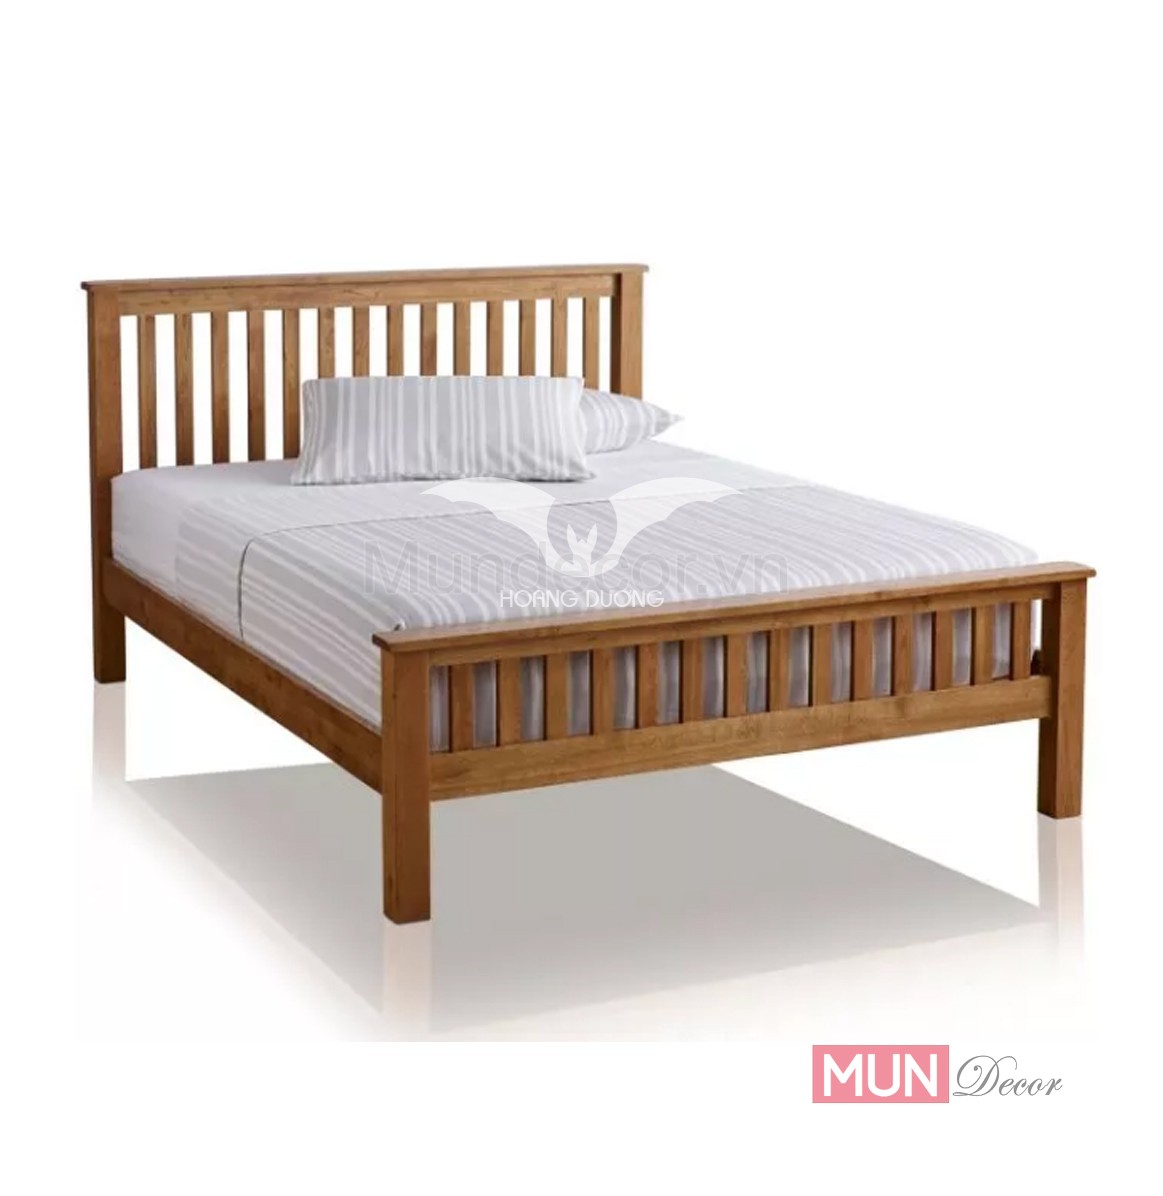 Giường ngủ hiện đại GH042: Giường ngủ GH042 là sản phẩm đặc biệt được thiết kế độc đáo và tinh tế để mang lại cho bạn giấc ngủ trọn vẹn. Với chất liệu và màu sắc đa dạng, giường sẽ phù hợp với mọi phong cách nội thất và giúp bạn tận hưởng giấc ngủ thoải mái.